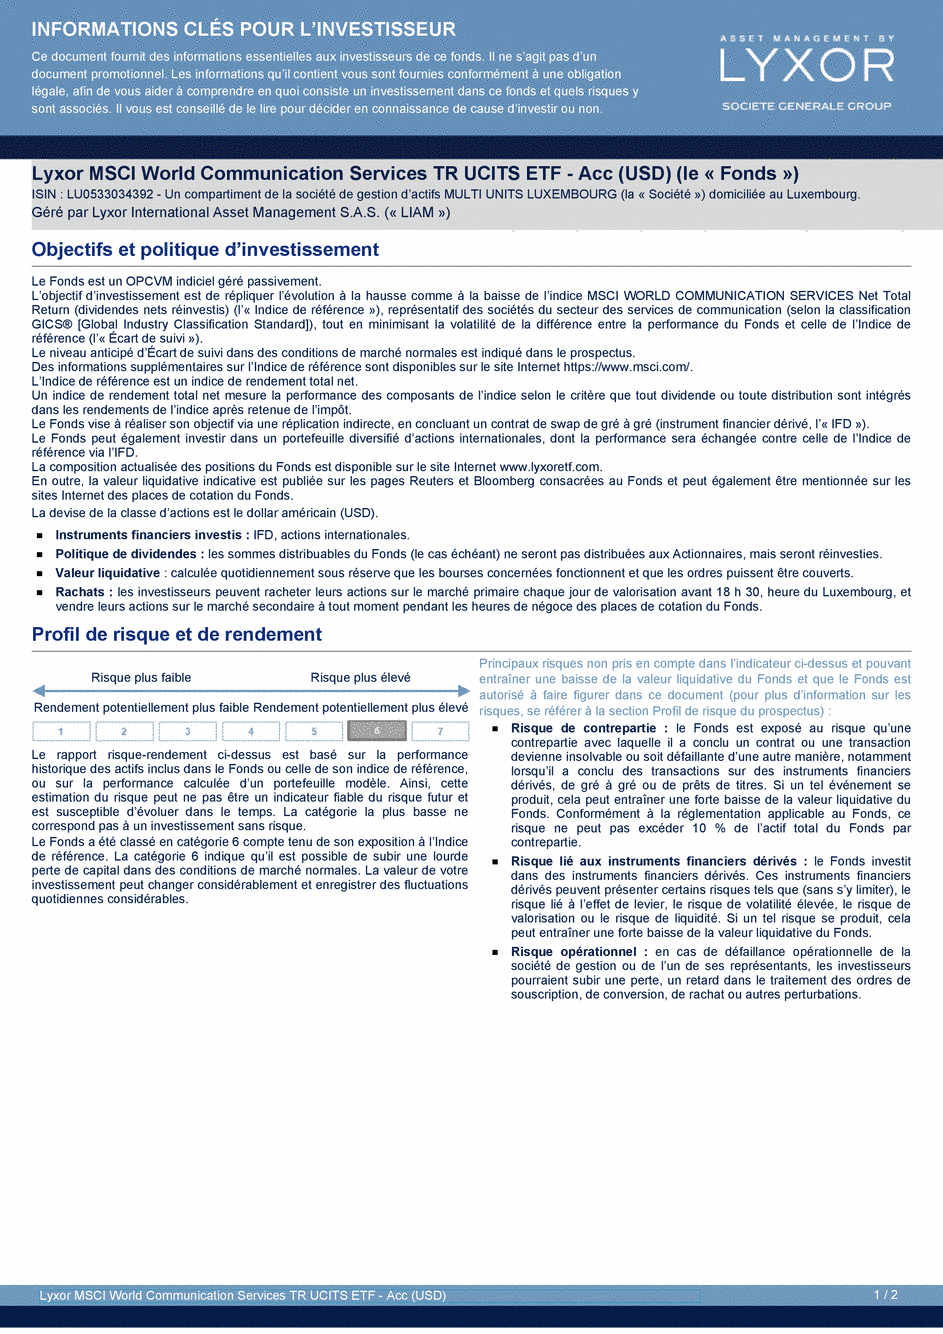 DICI Lyxor MSCI World Communication Services TR UCITS ETF - Acc (USD) - 19/02/2021 - Français